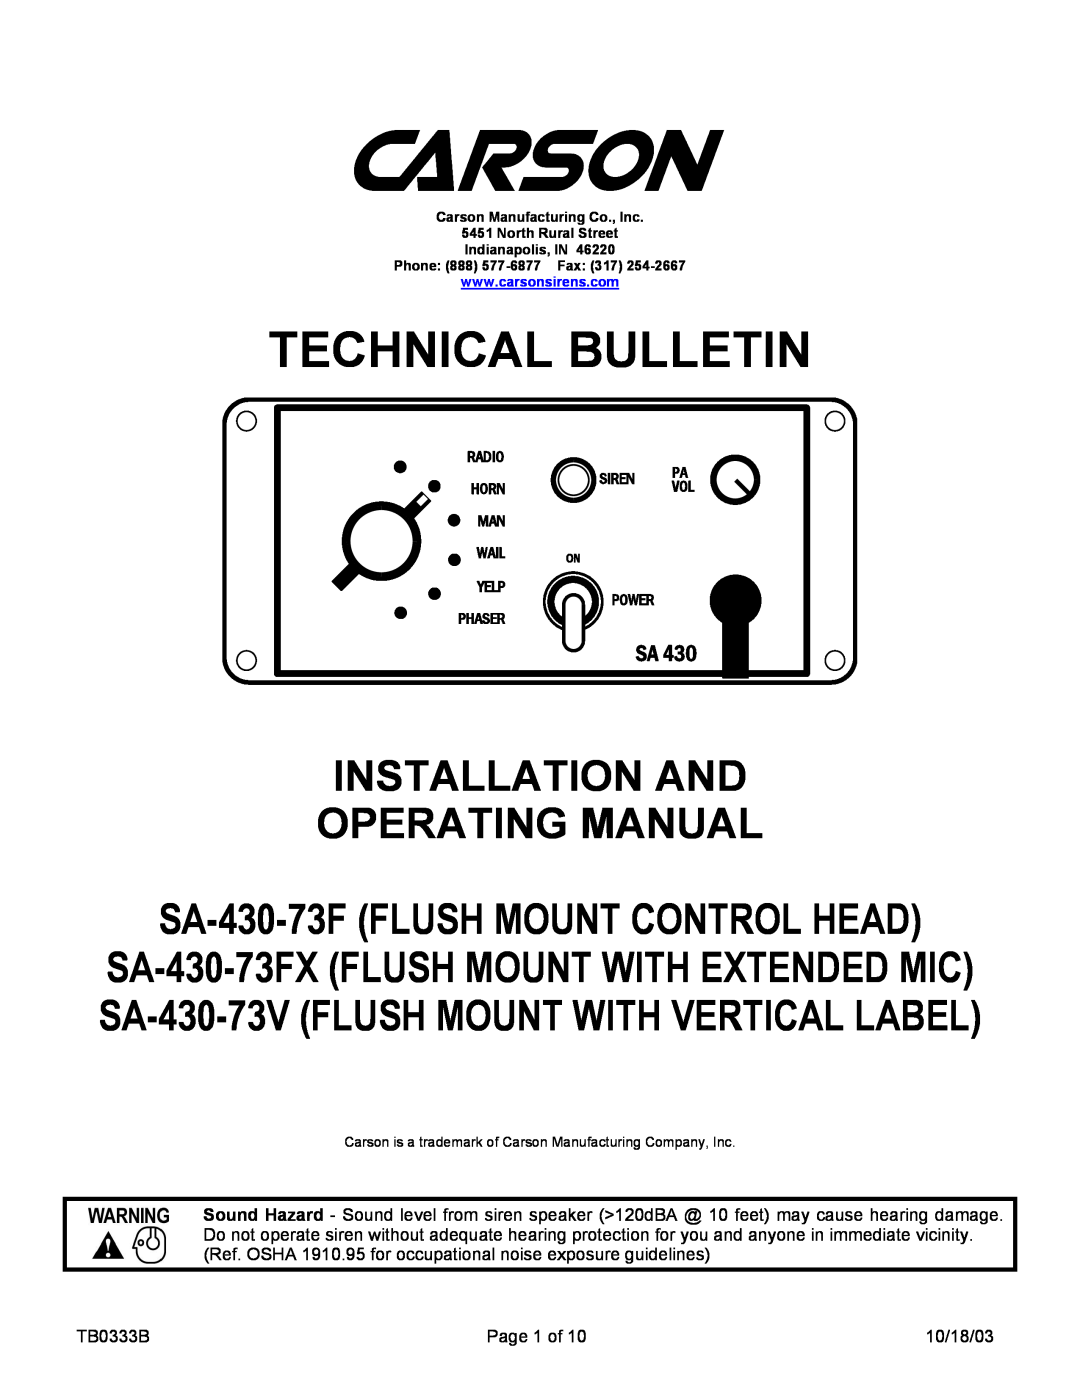 Carson SA-430-73V manual Technical Bulletin, Installation And Operating Manual, SA-430-73FFLUSH MOUNT CONTROL HEAD 